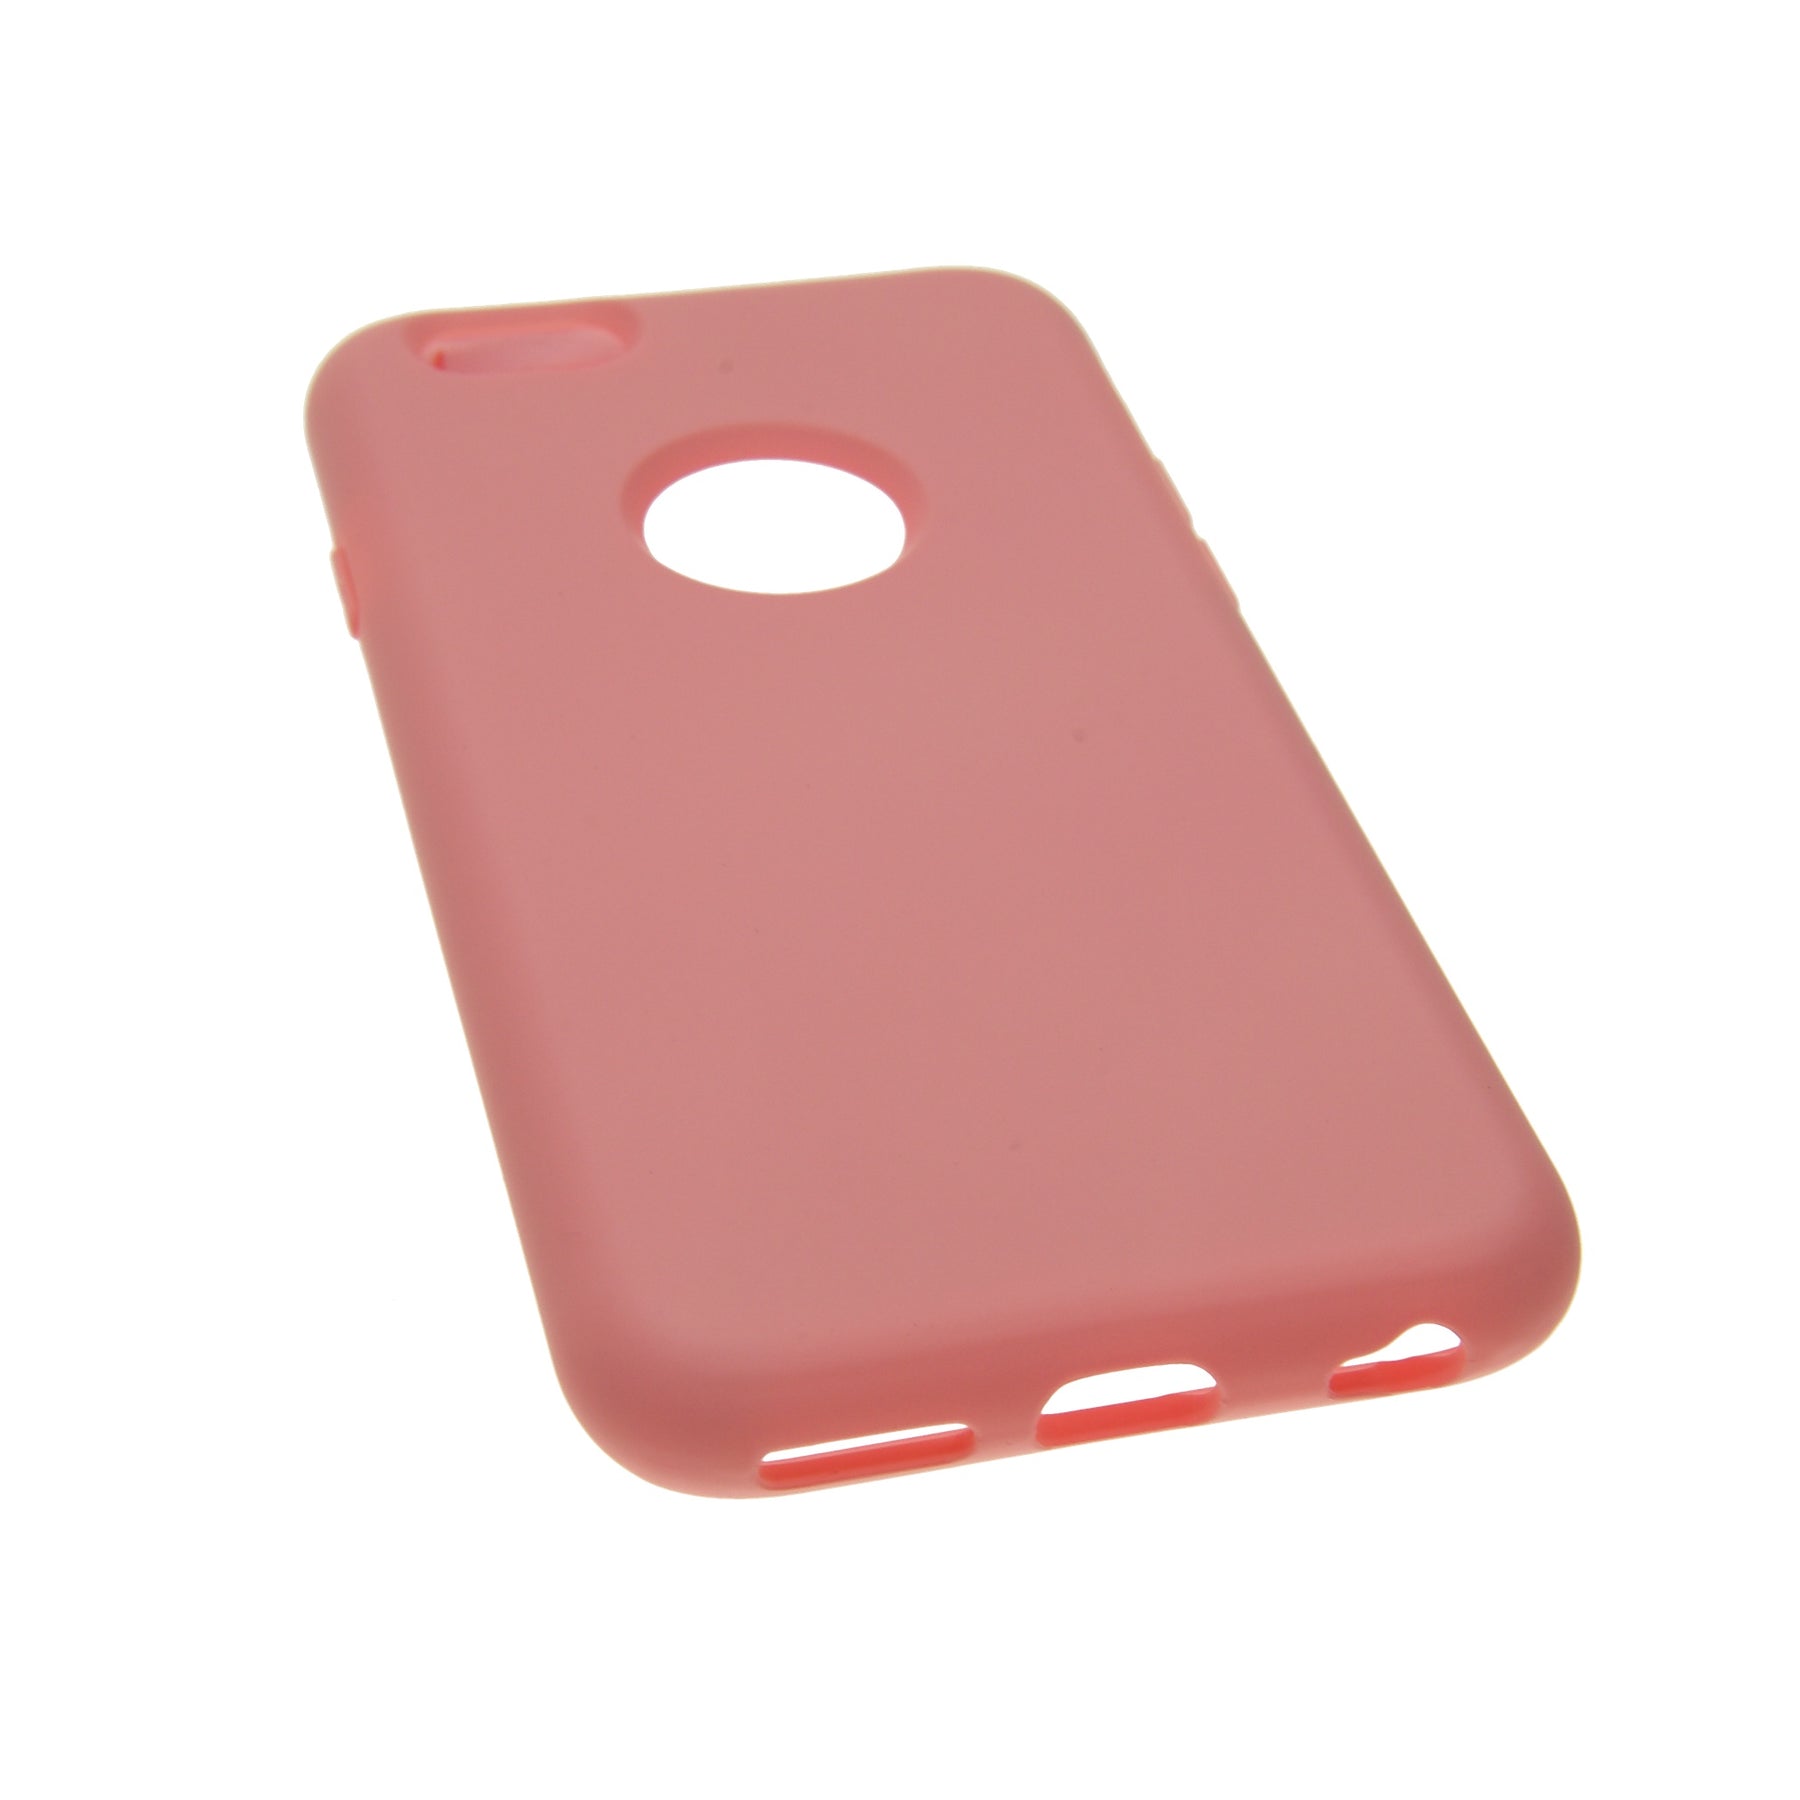 estuches silicon el rey silicon apple iphone 6 plus color rosado